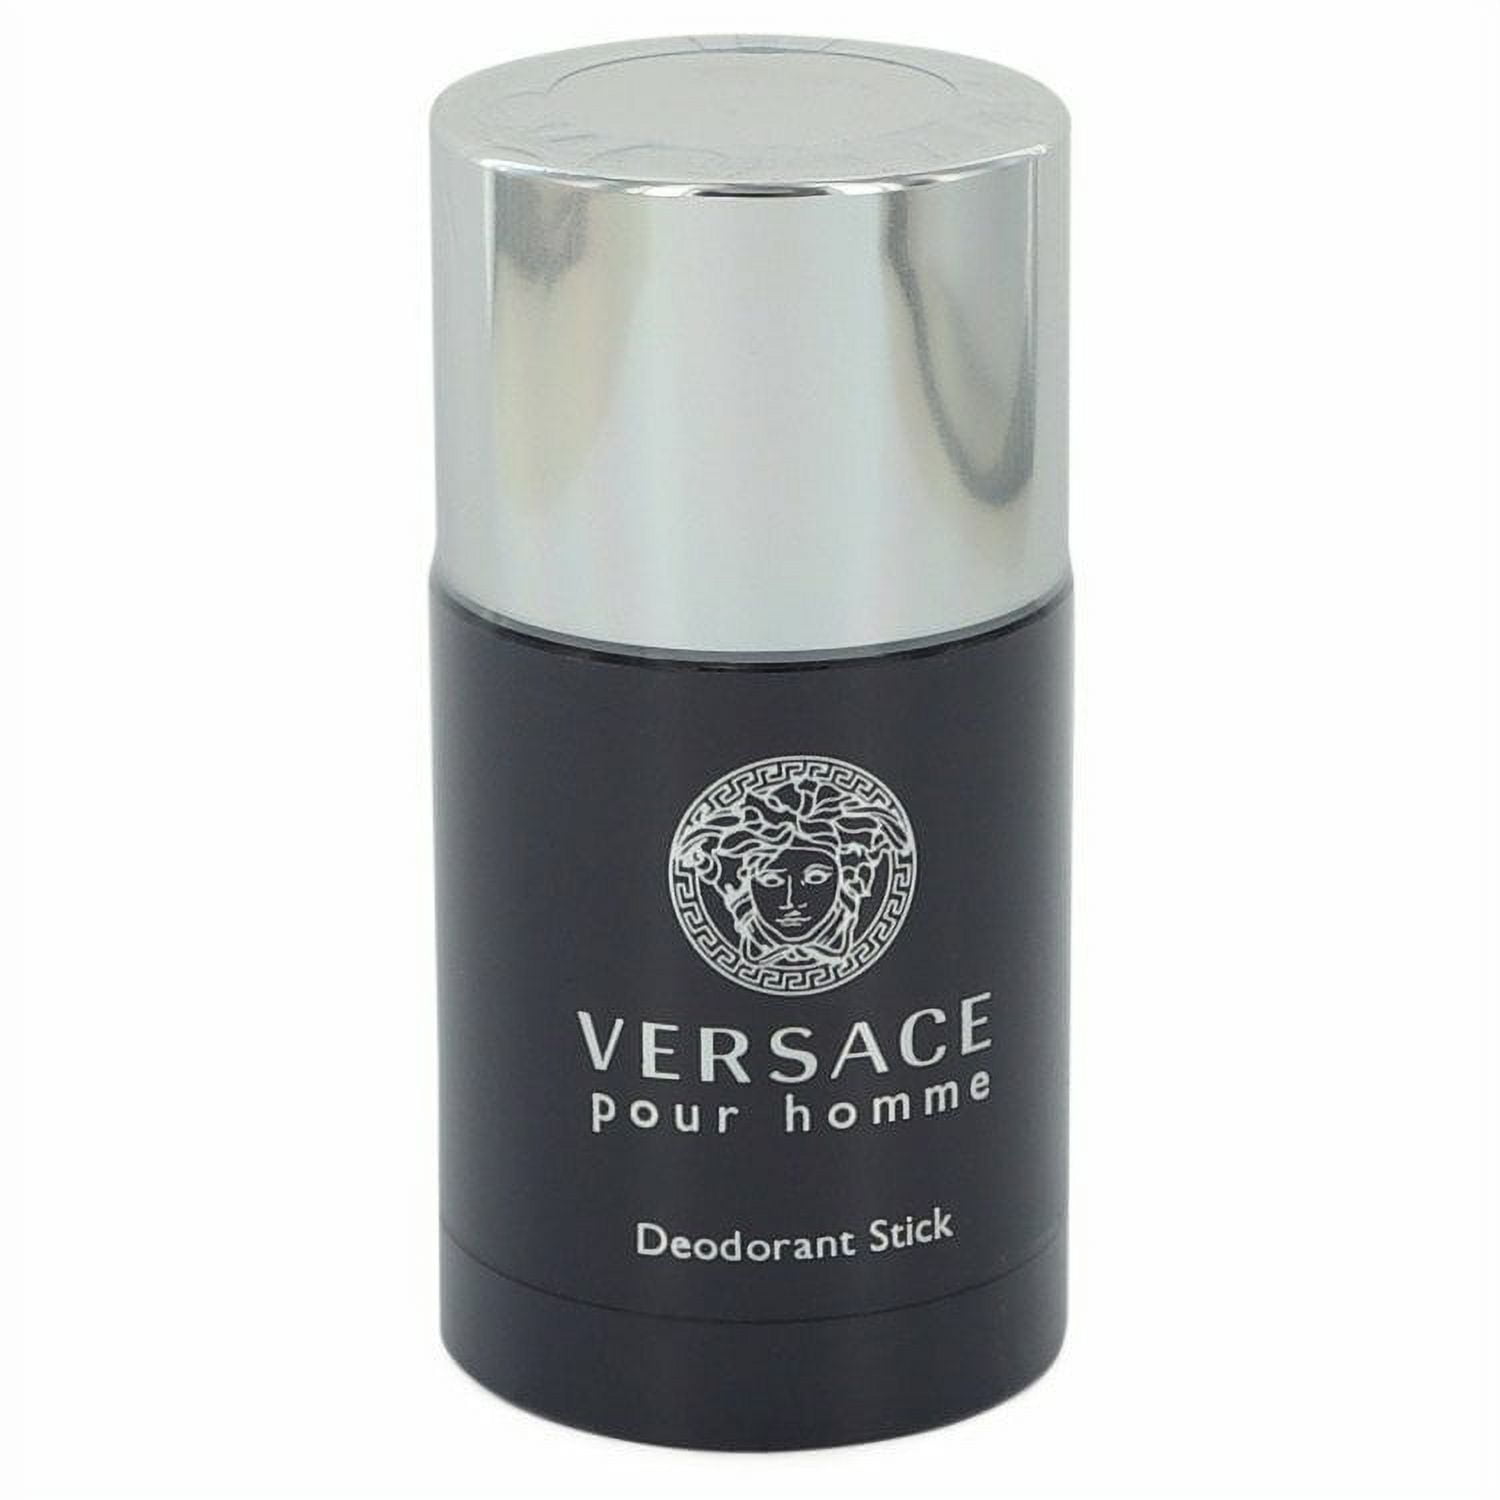 Versace Pour Homme by Versace 2.5 oz Deodorant Stick / Men